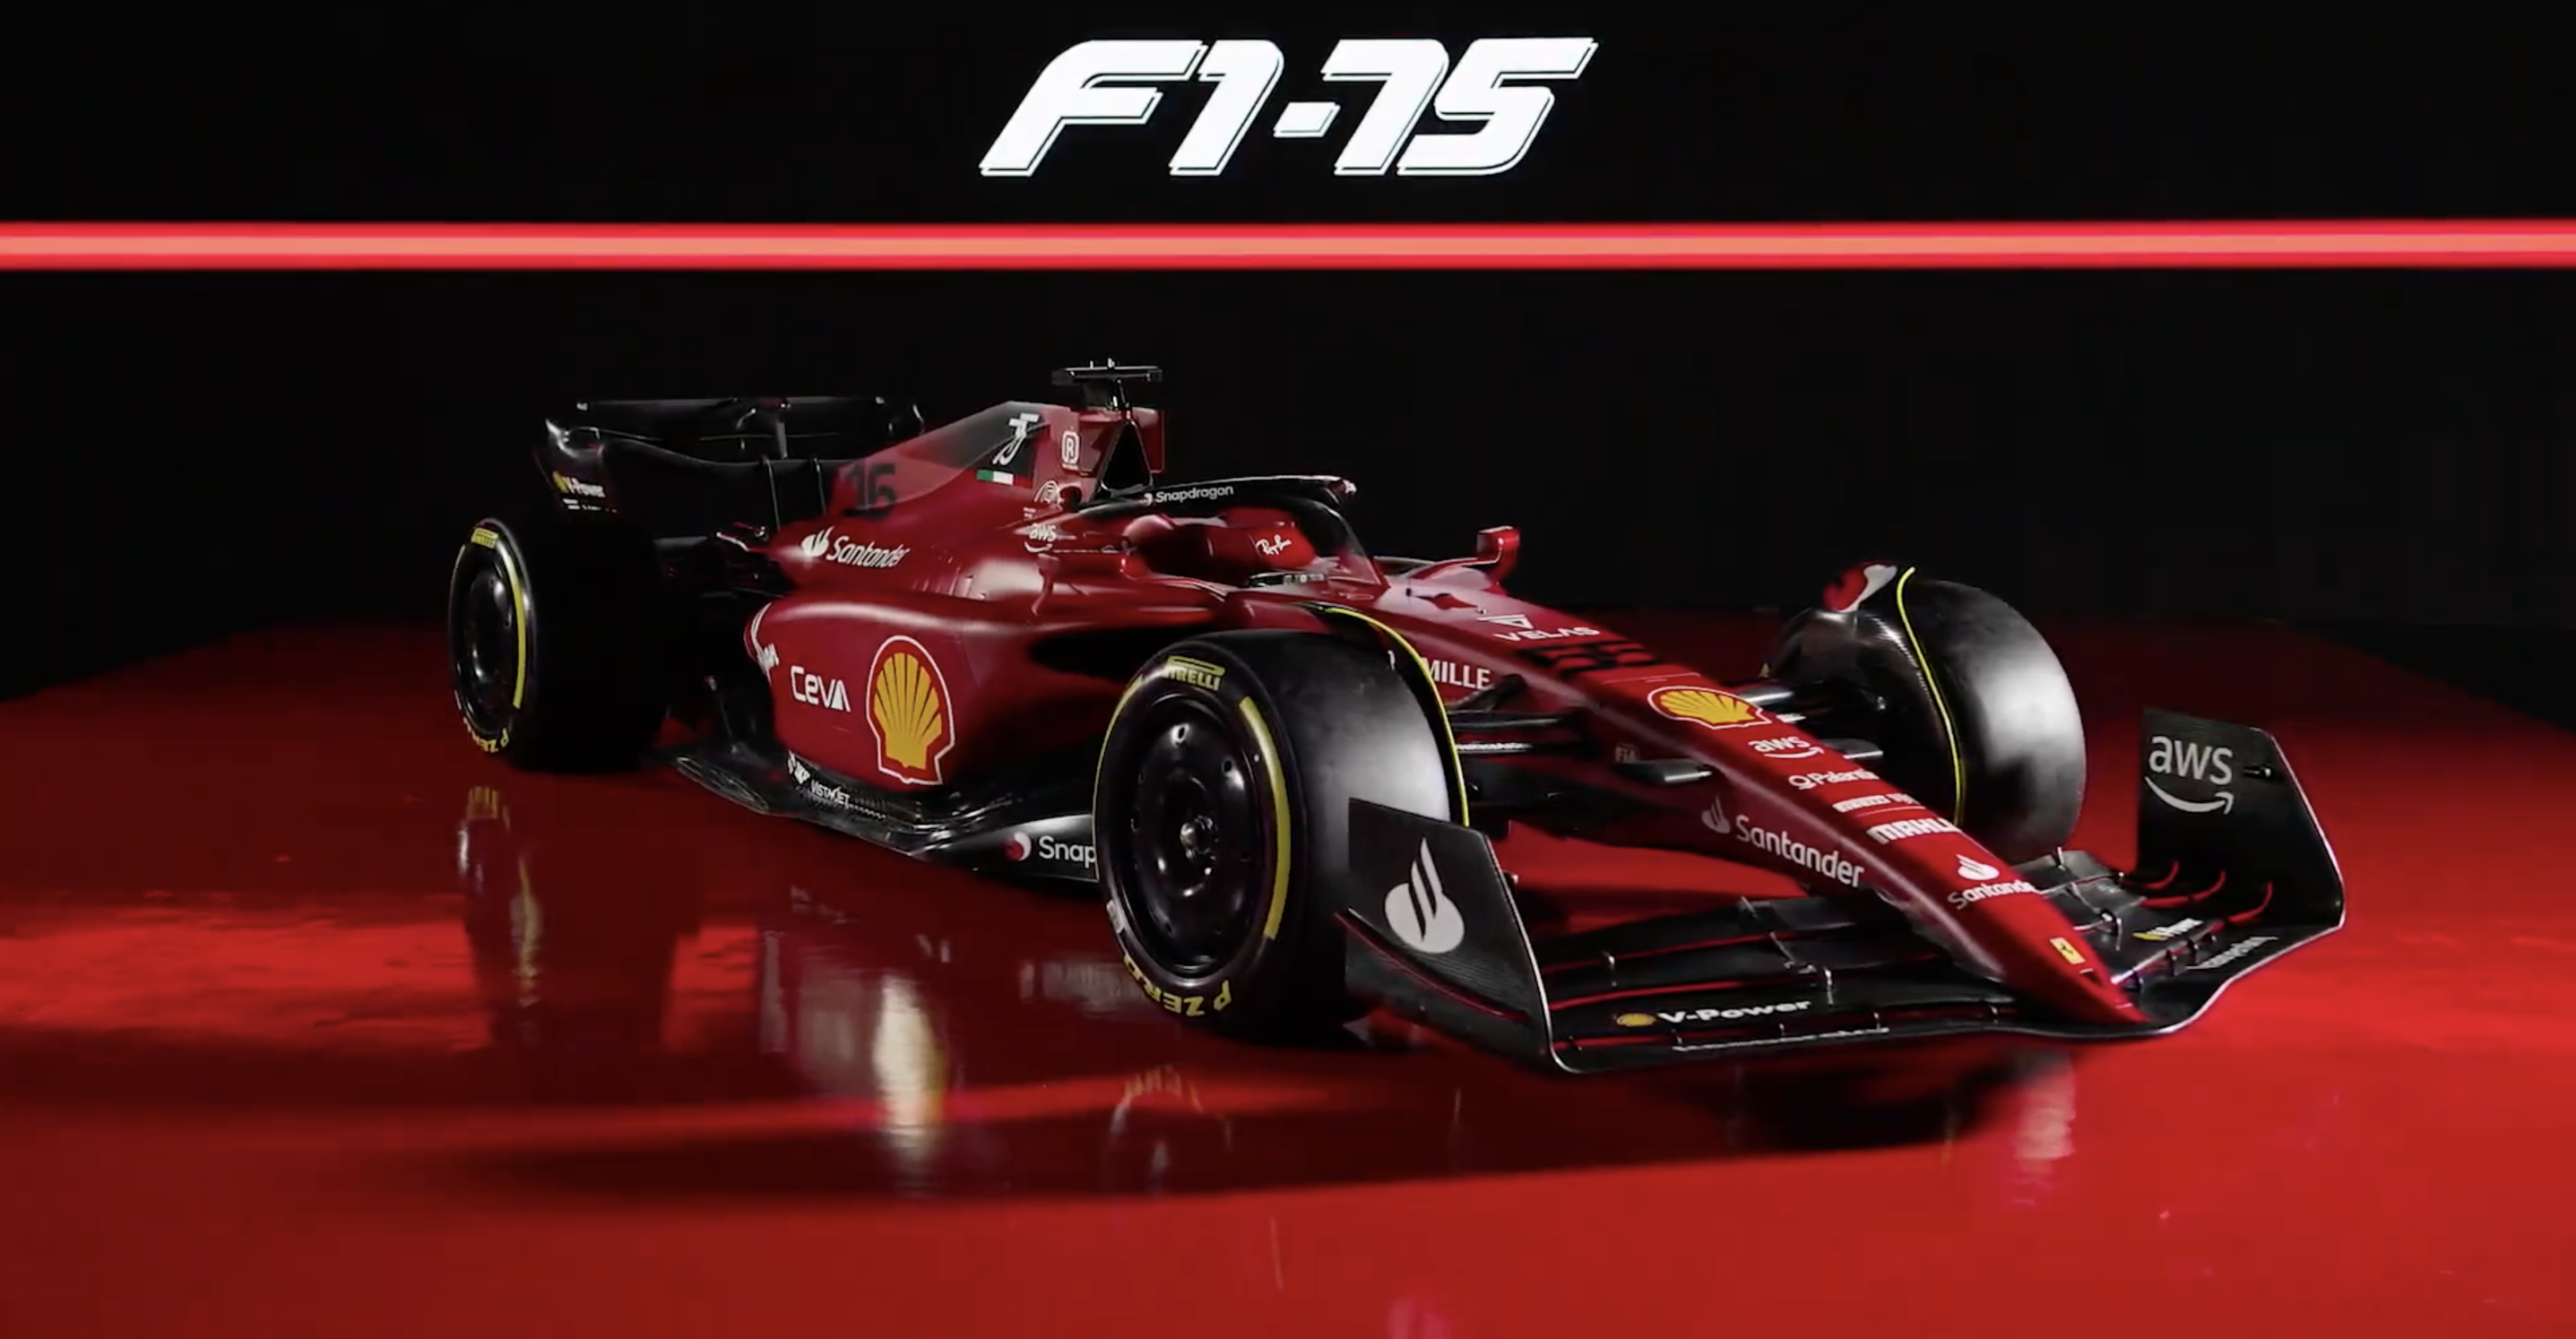 Ferrari Present New Look F1 75 For The 2022 F1 Season